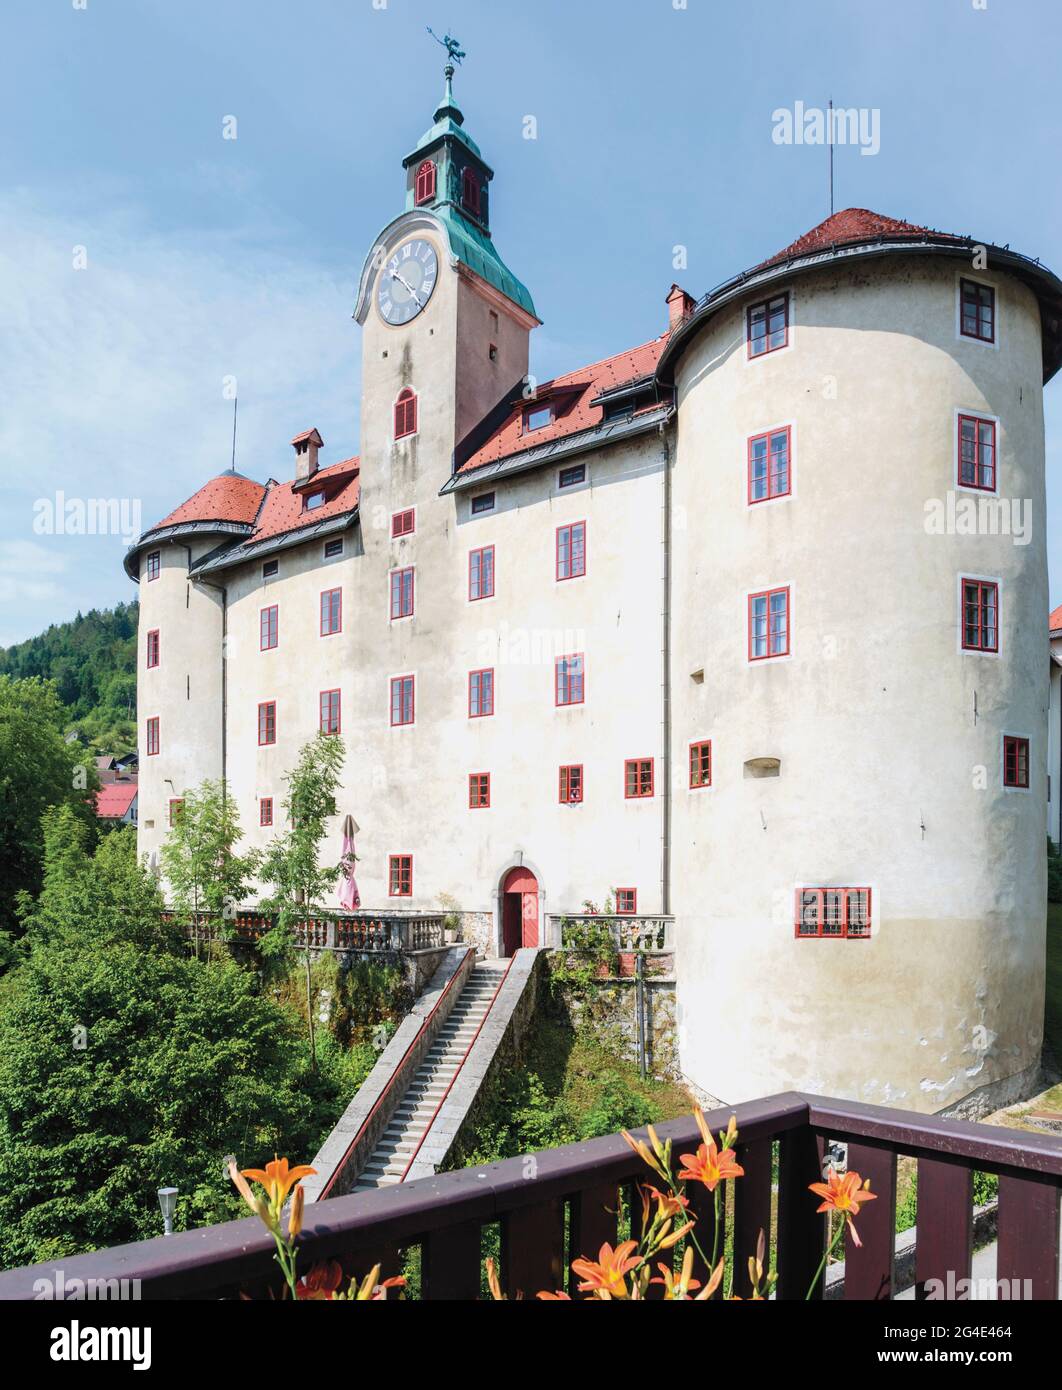 Idrija, Litoral Eslovena, Eslovenia. Castillo Gewerkenegg. El castillo alberga el museo de la ciudad que incluye la historia de la minería del mercurio en Idrija. Foto de stock